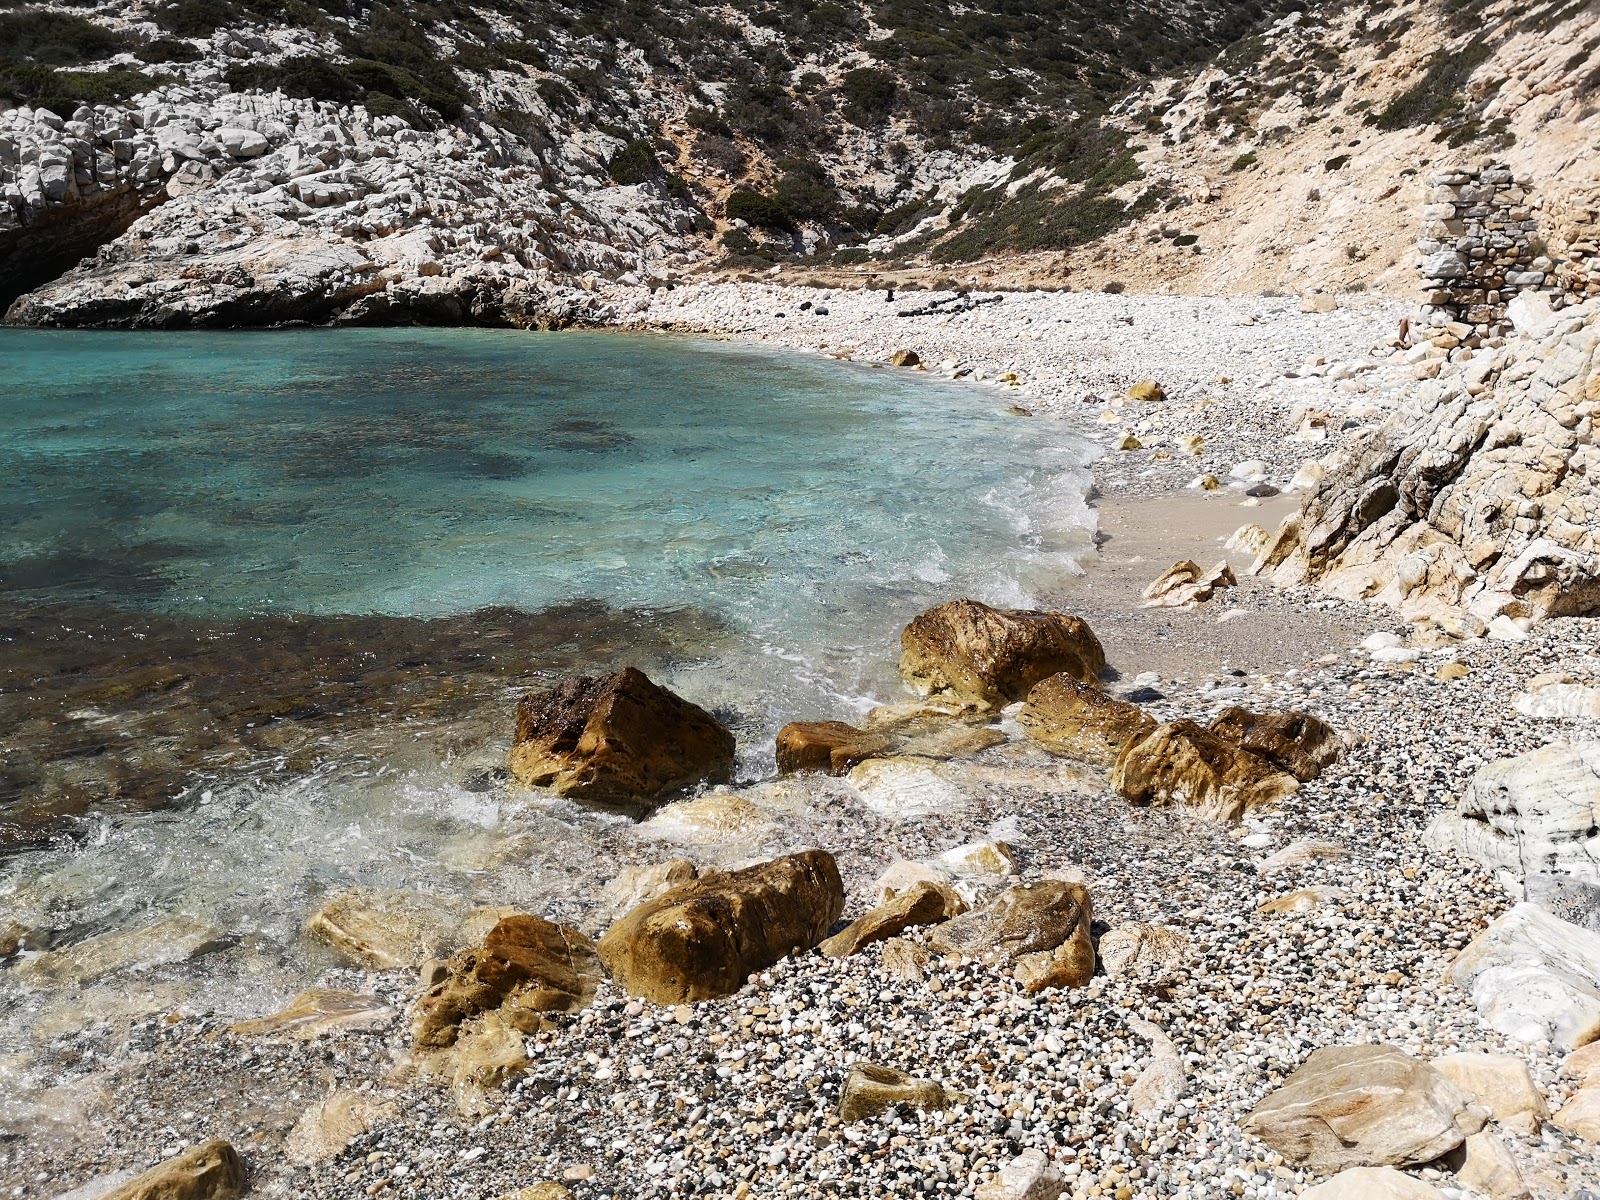 Vathi Limenari'in fotoğrafı parlak kum ve kayalar yüzey ile